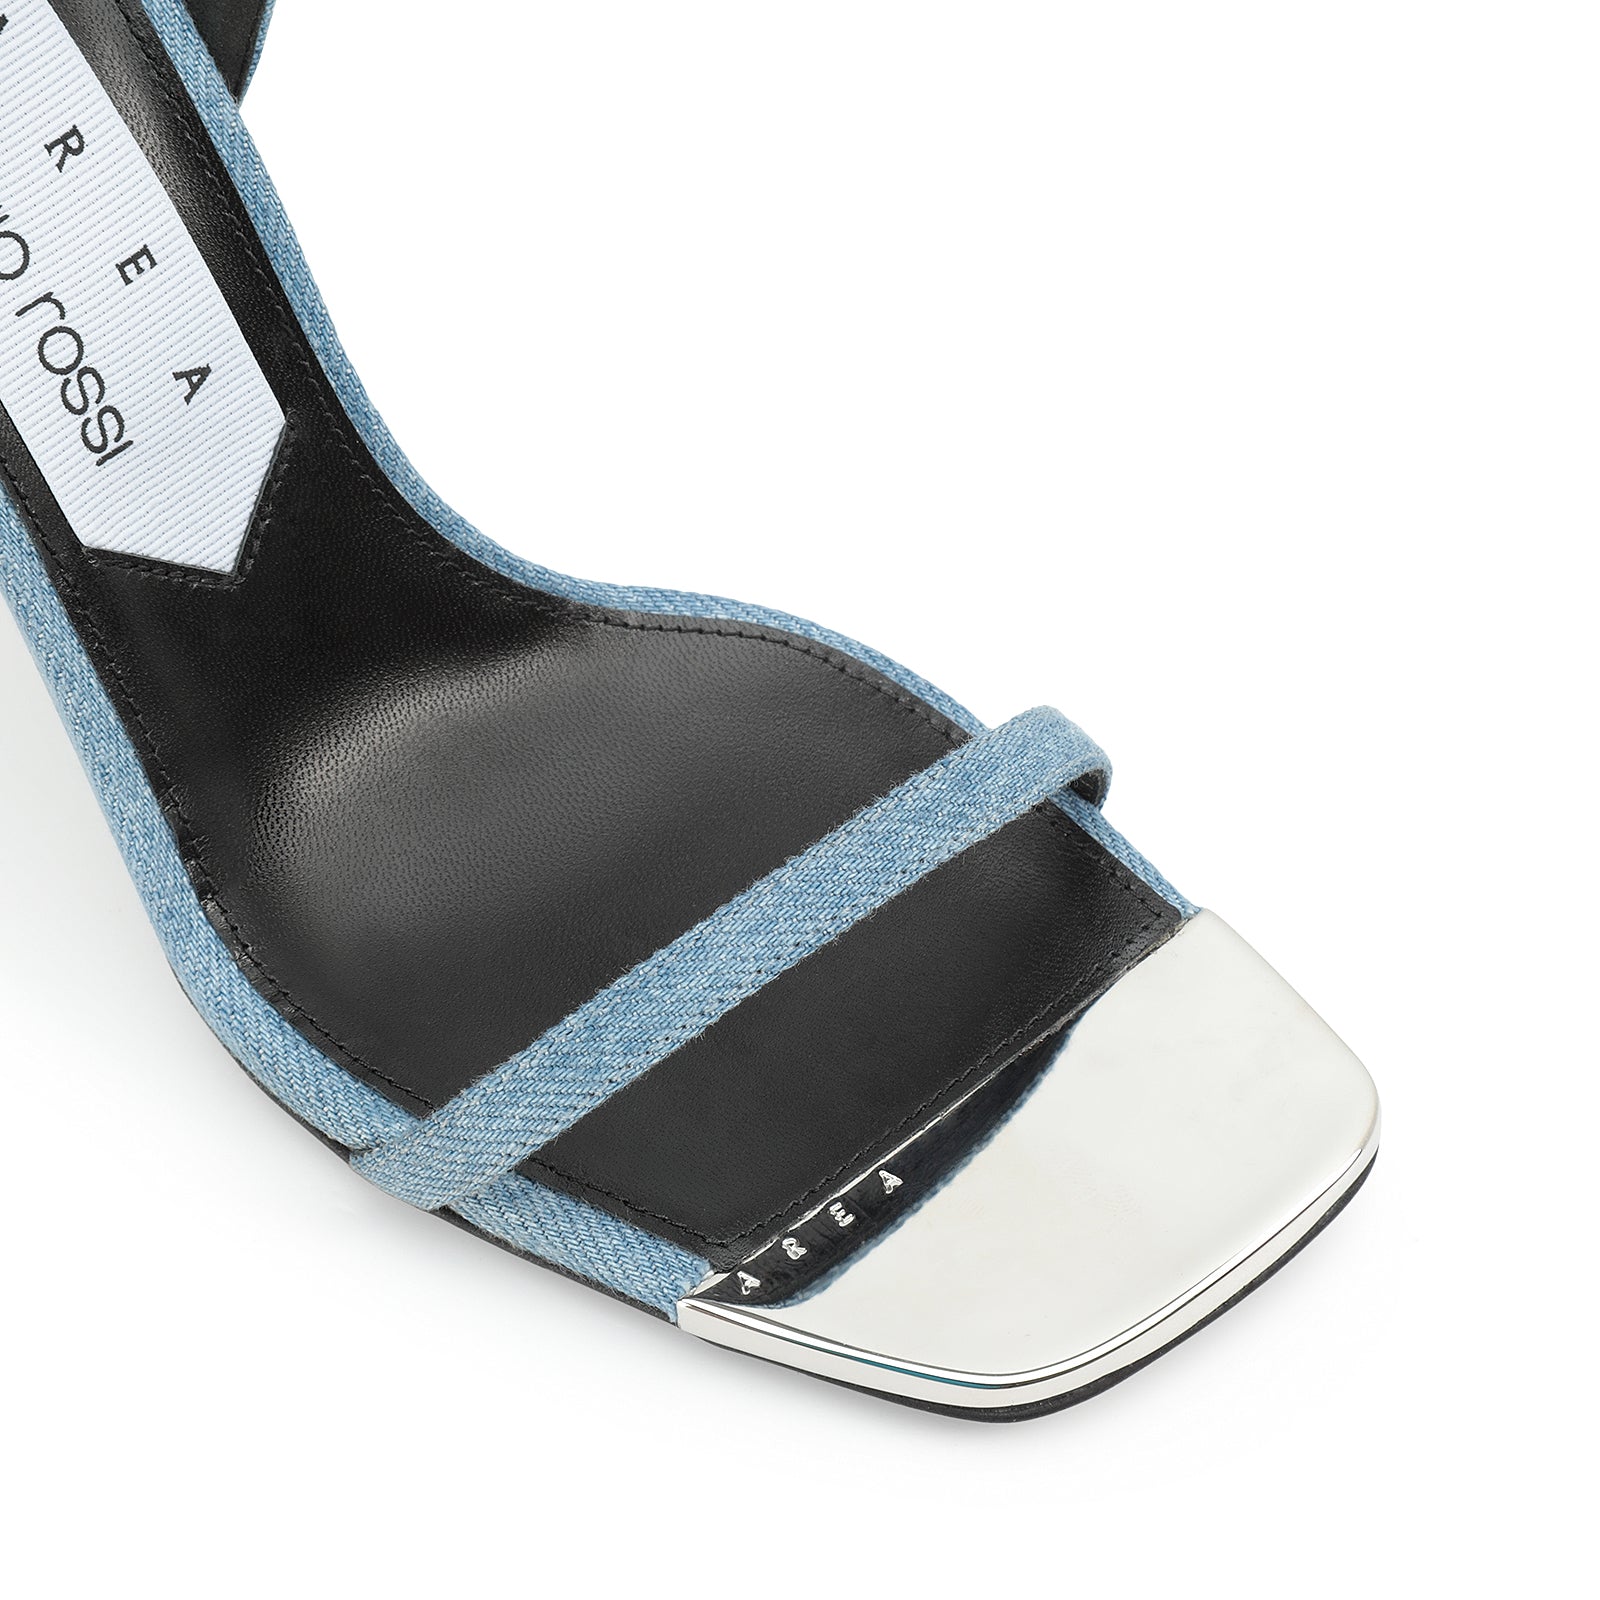 Amazona 95 heeled sandals - Blue